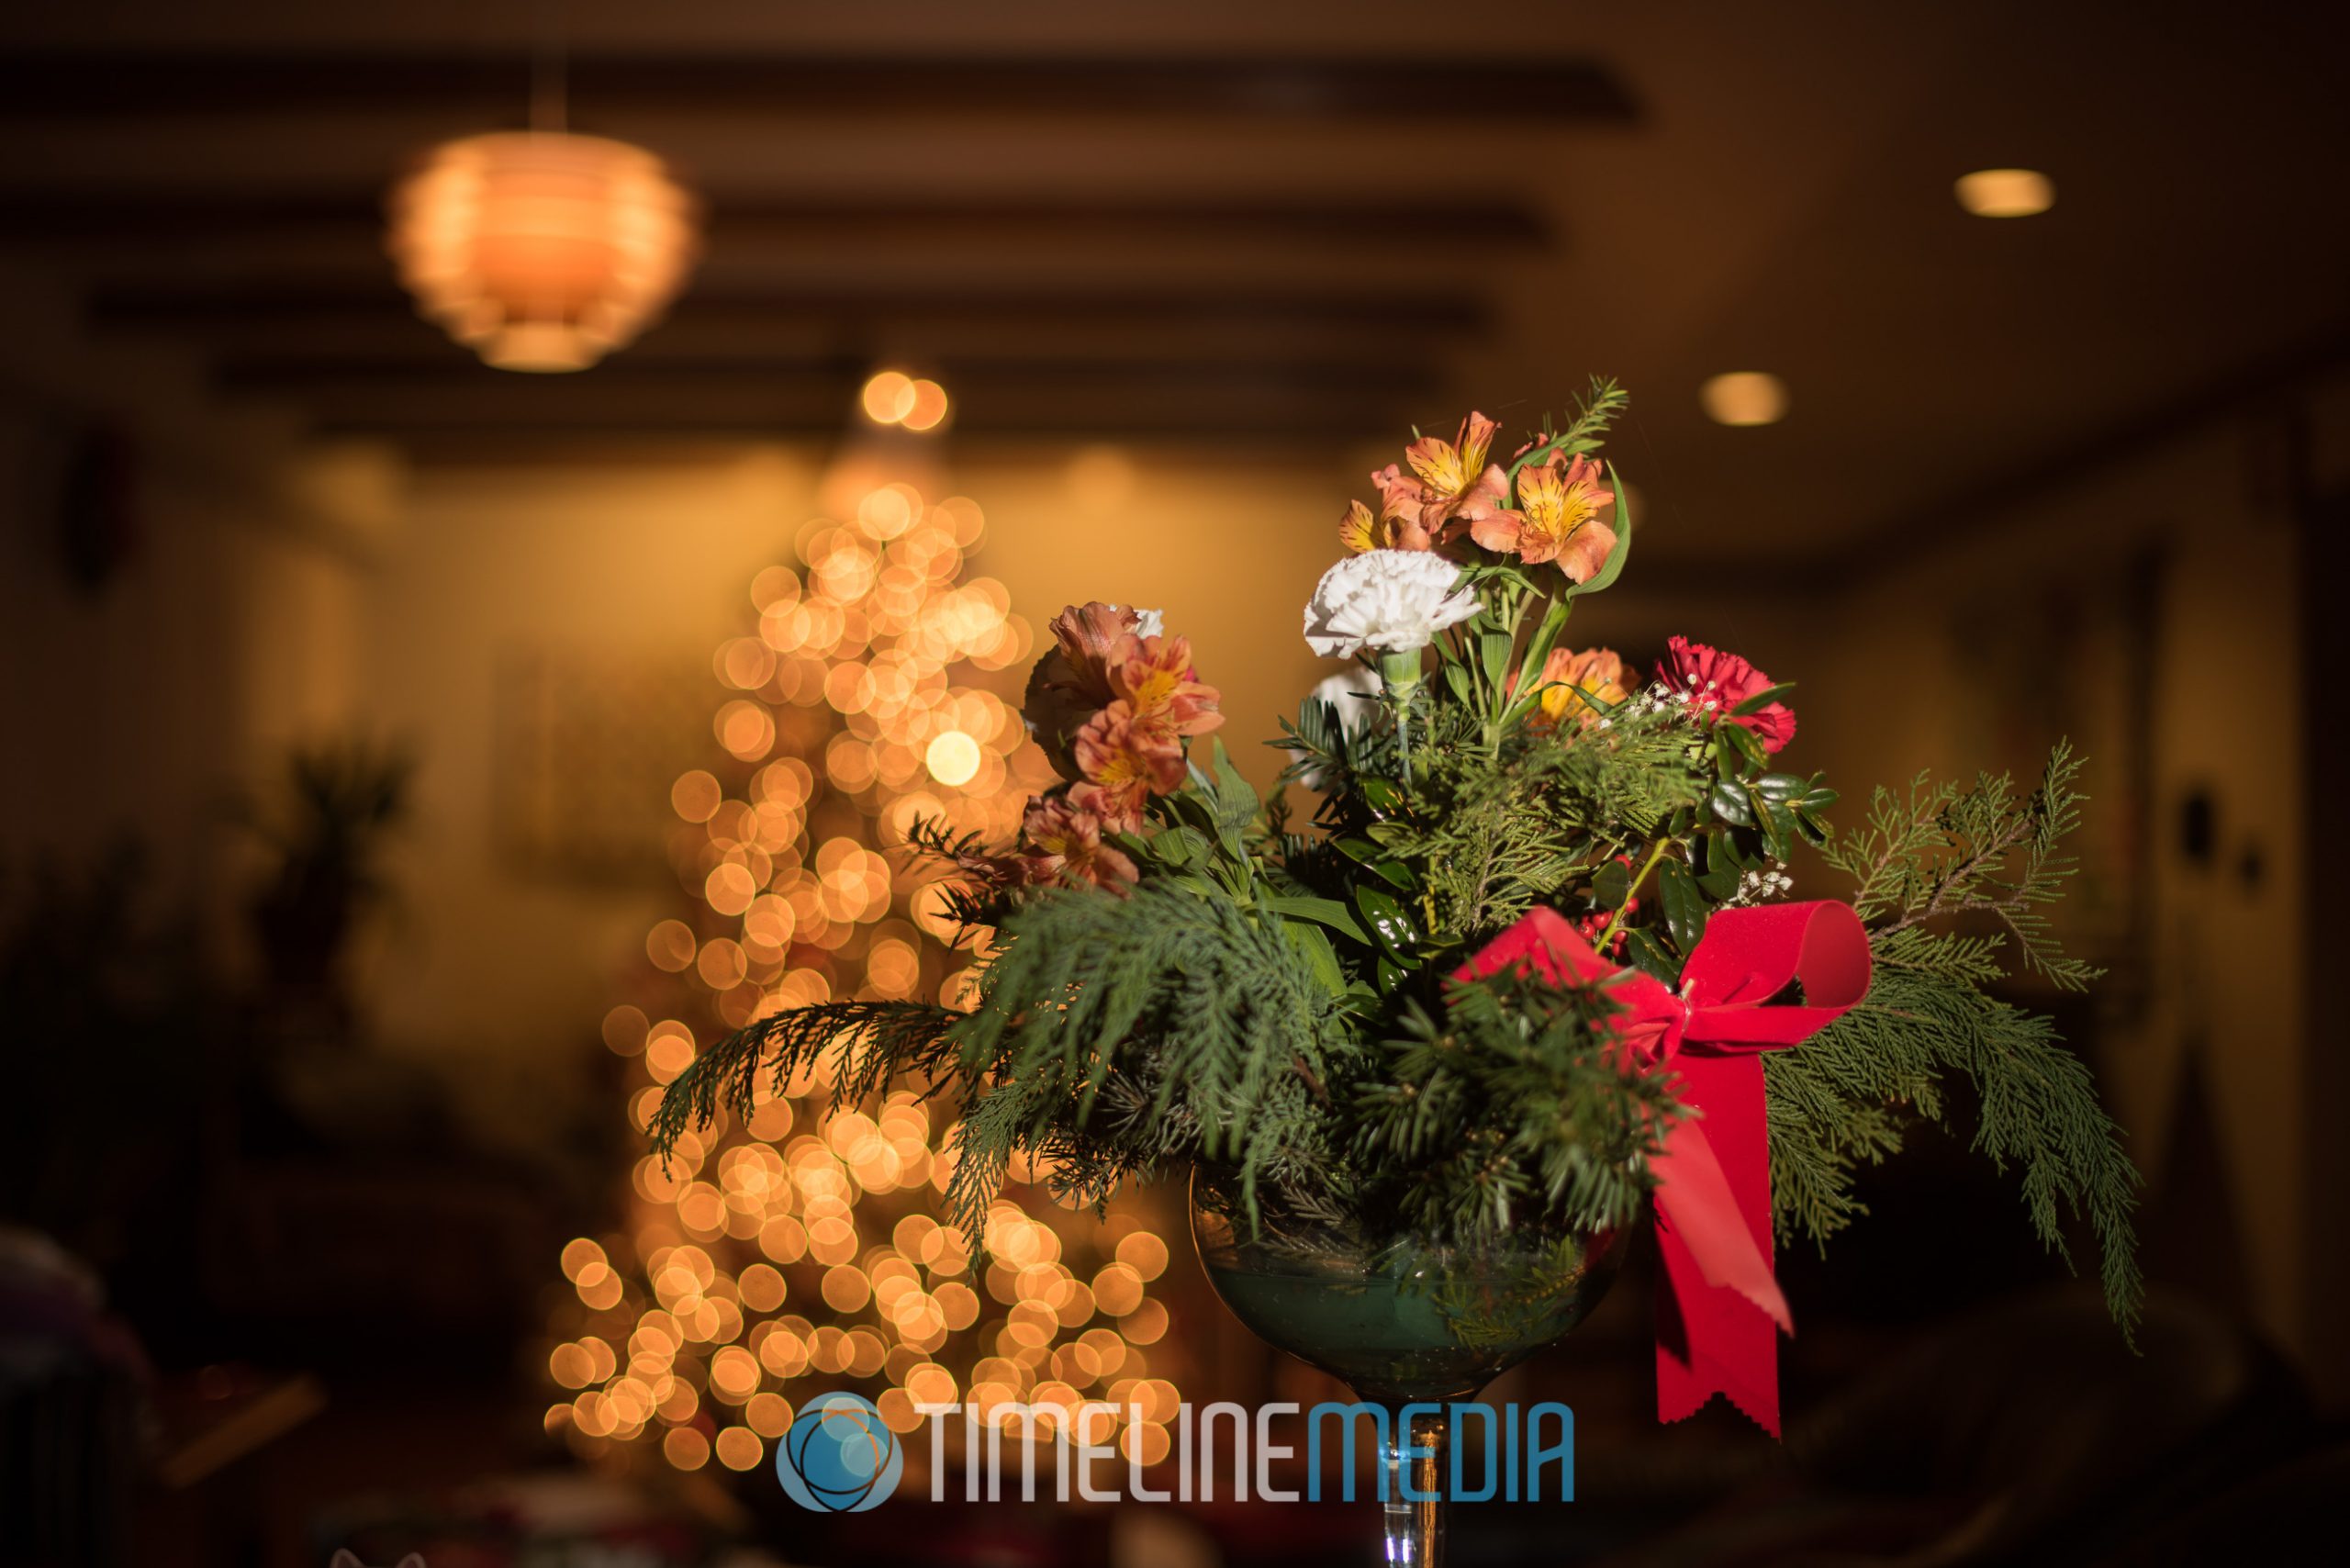 Flower arrangement and 2016 Christmas day lights ©TimeLine Media